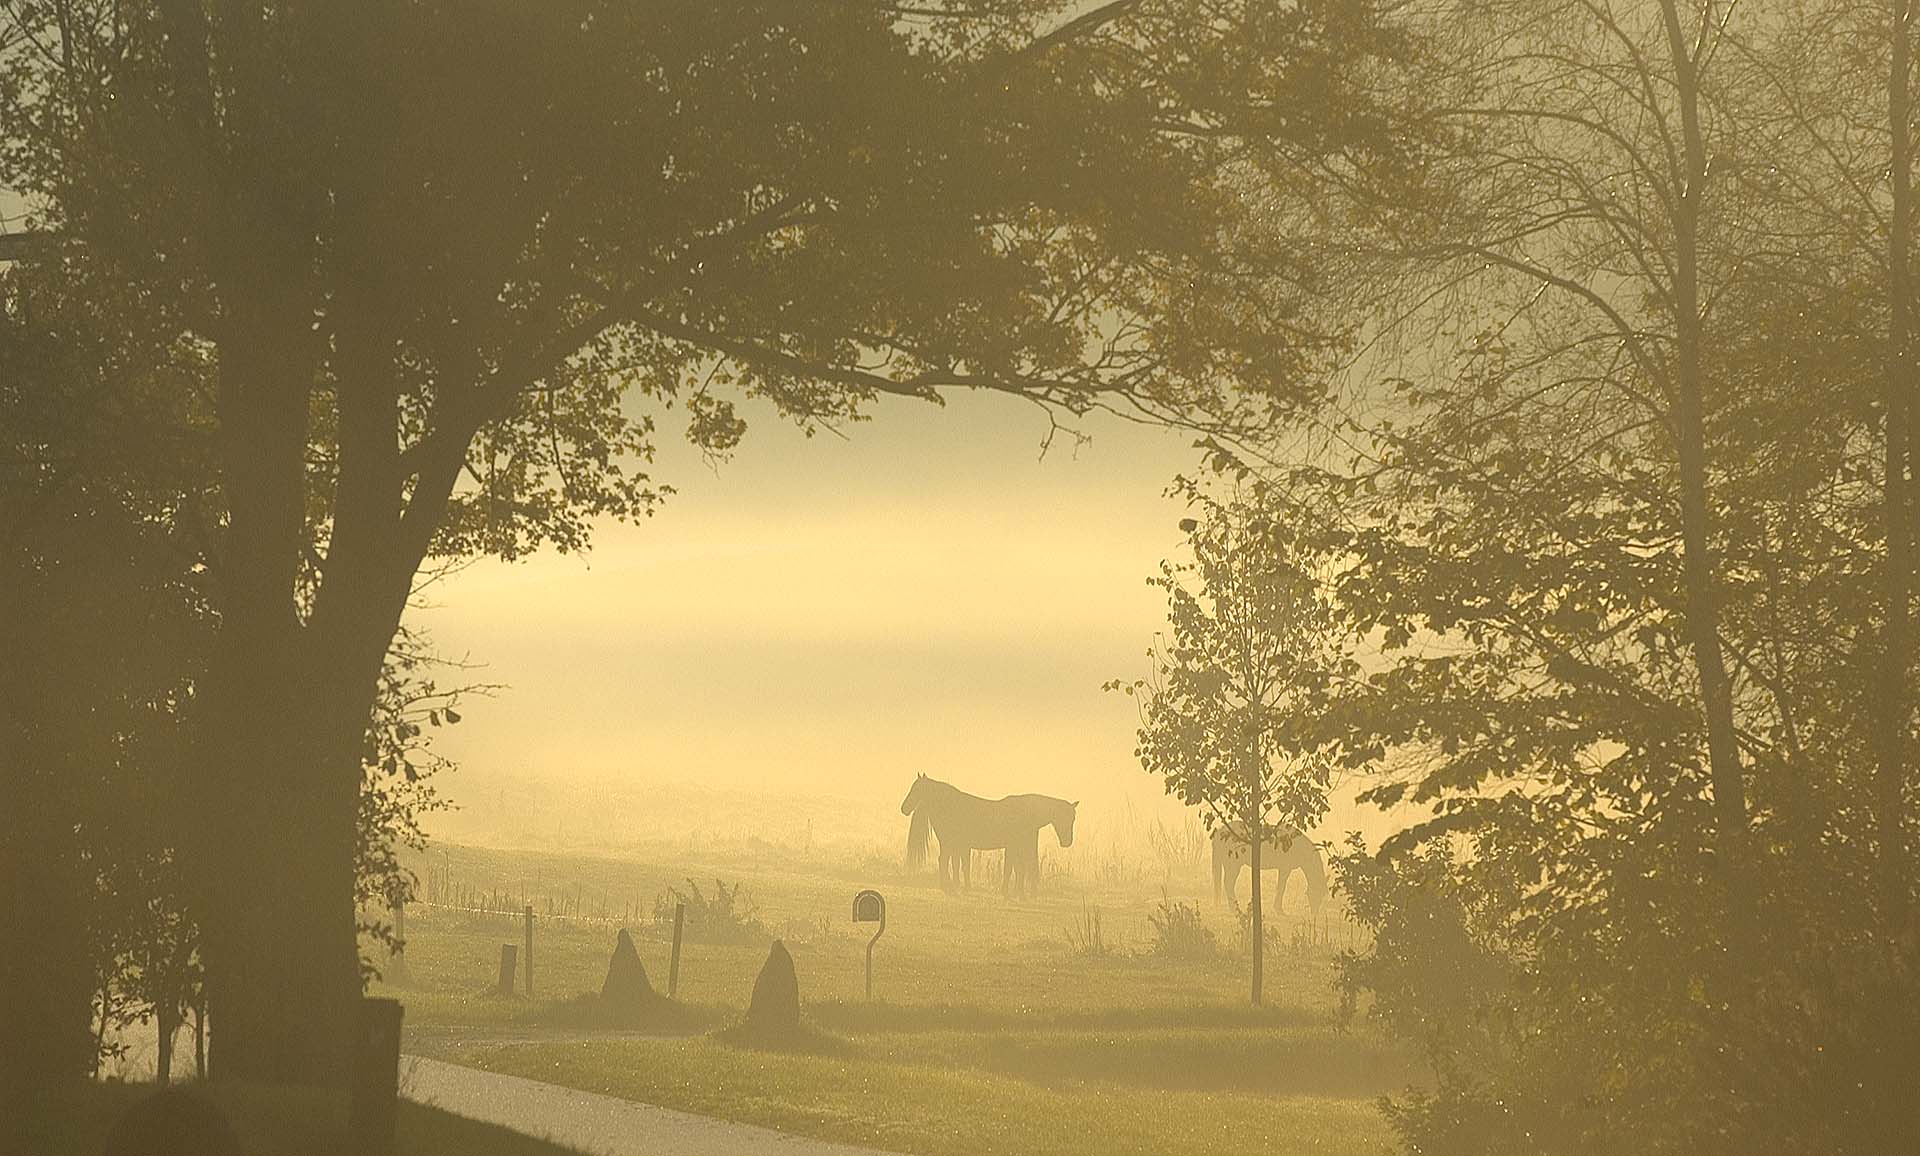 Horses in morning fog